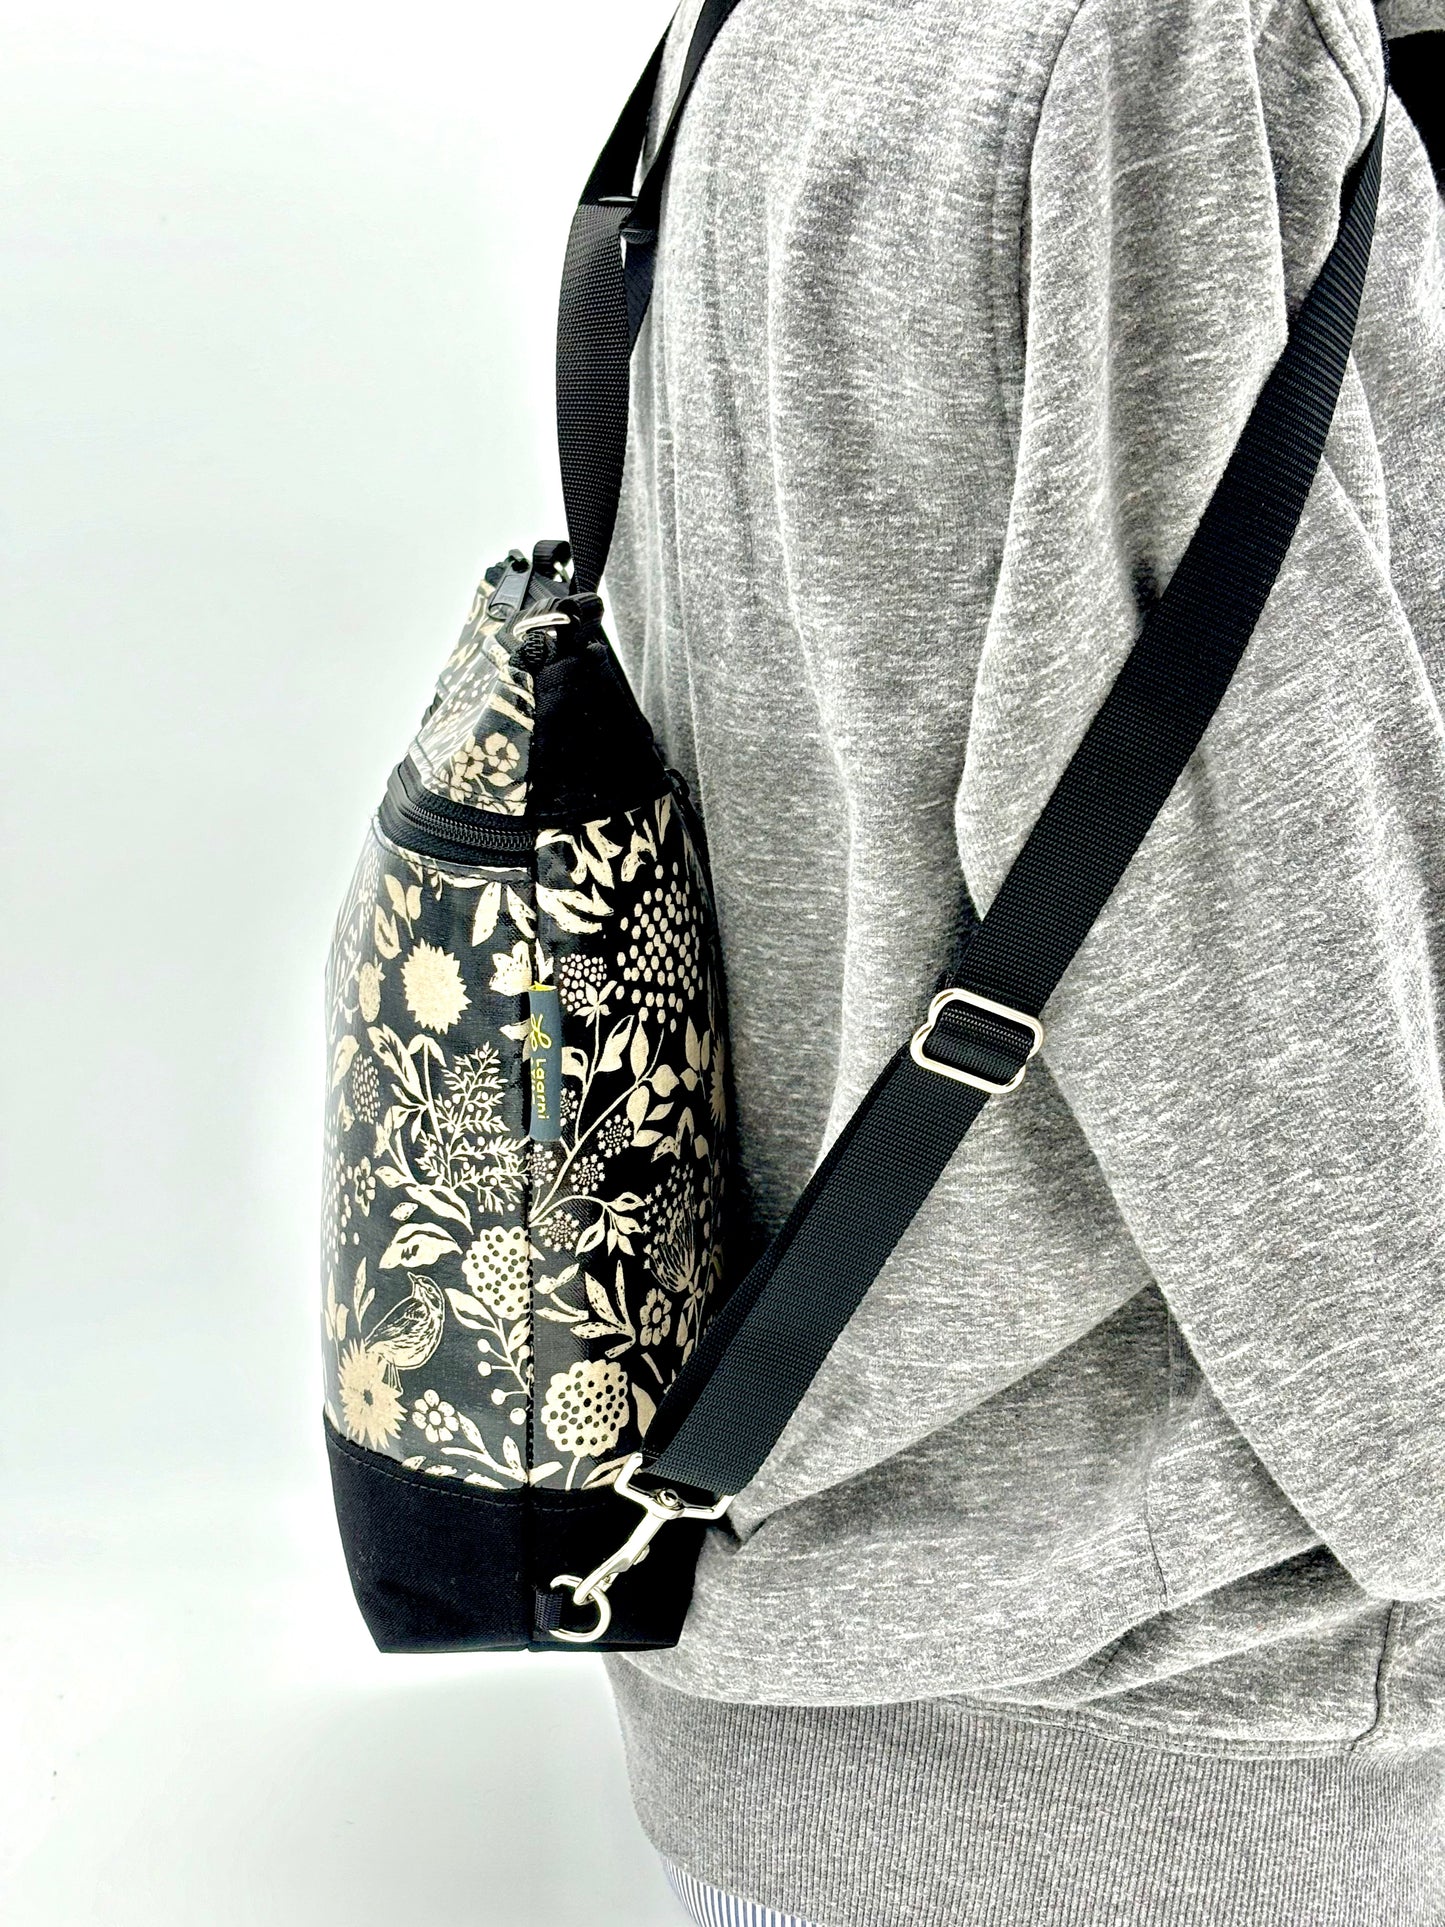 Backpack/Crossbody in Wildflowers black & cream